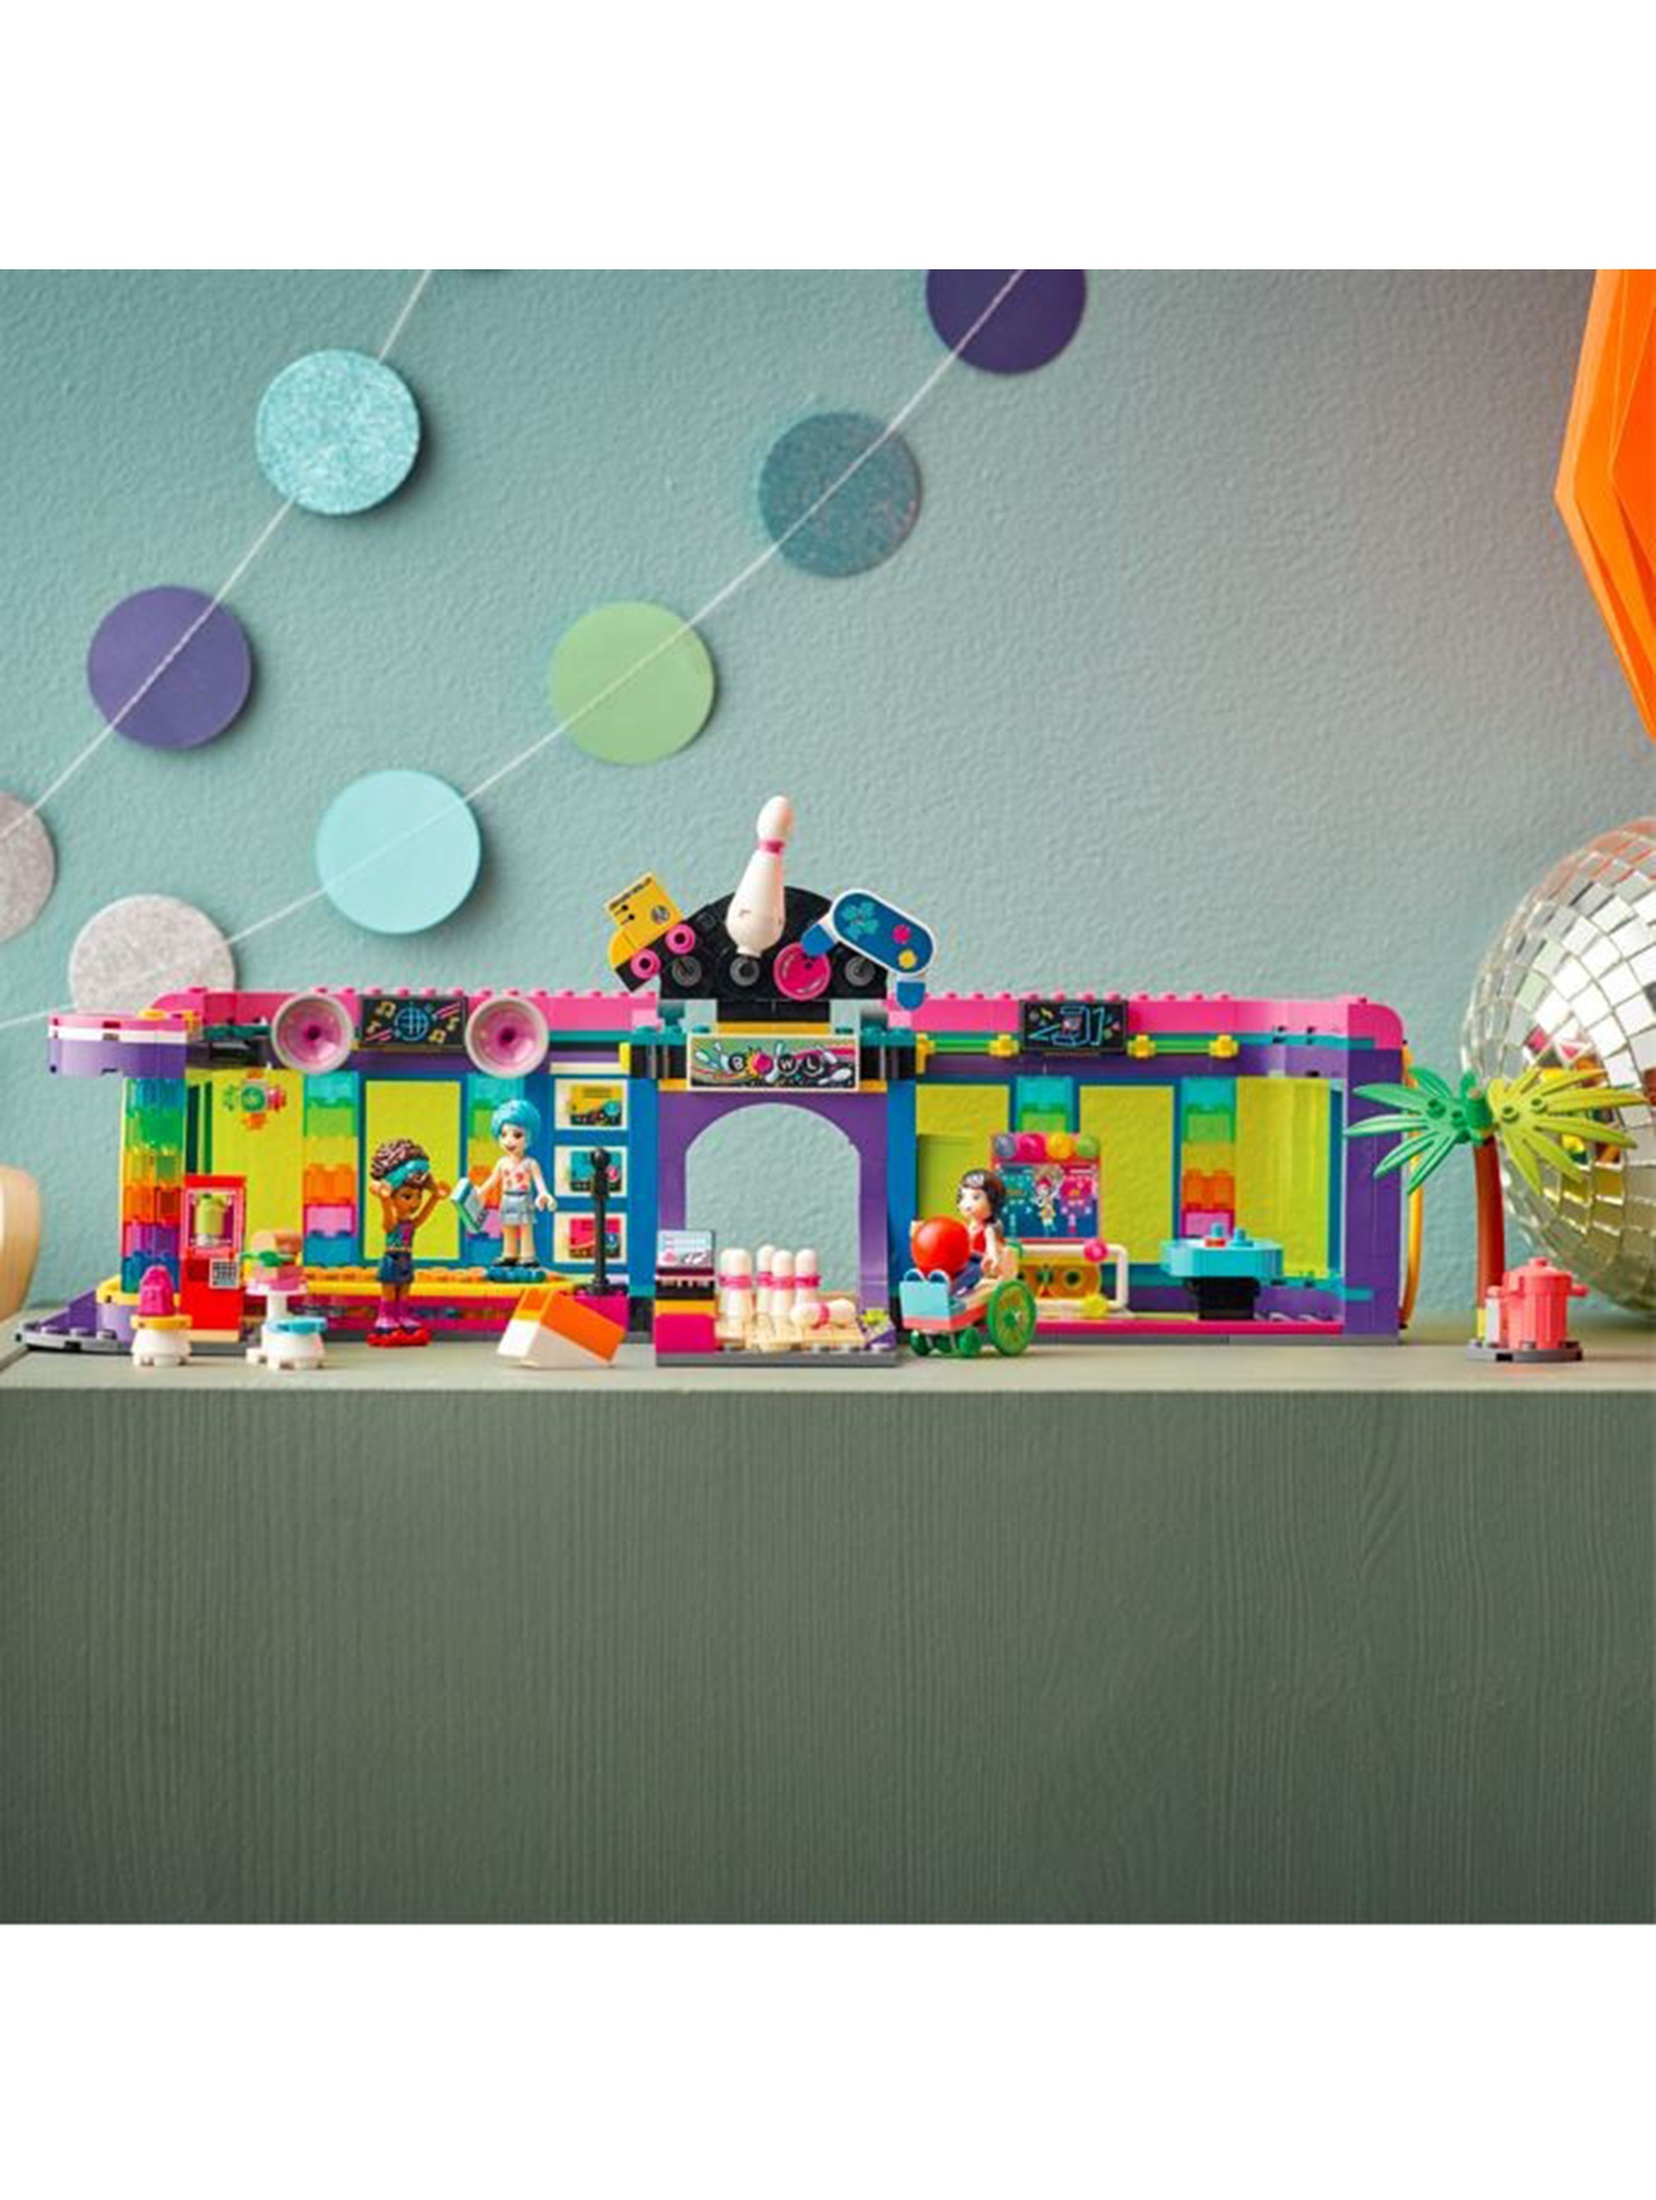 LEGO Friends - Automat w dyskotece 41708 - 642 elementy, wiek 7+